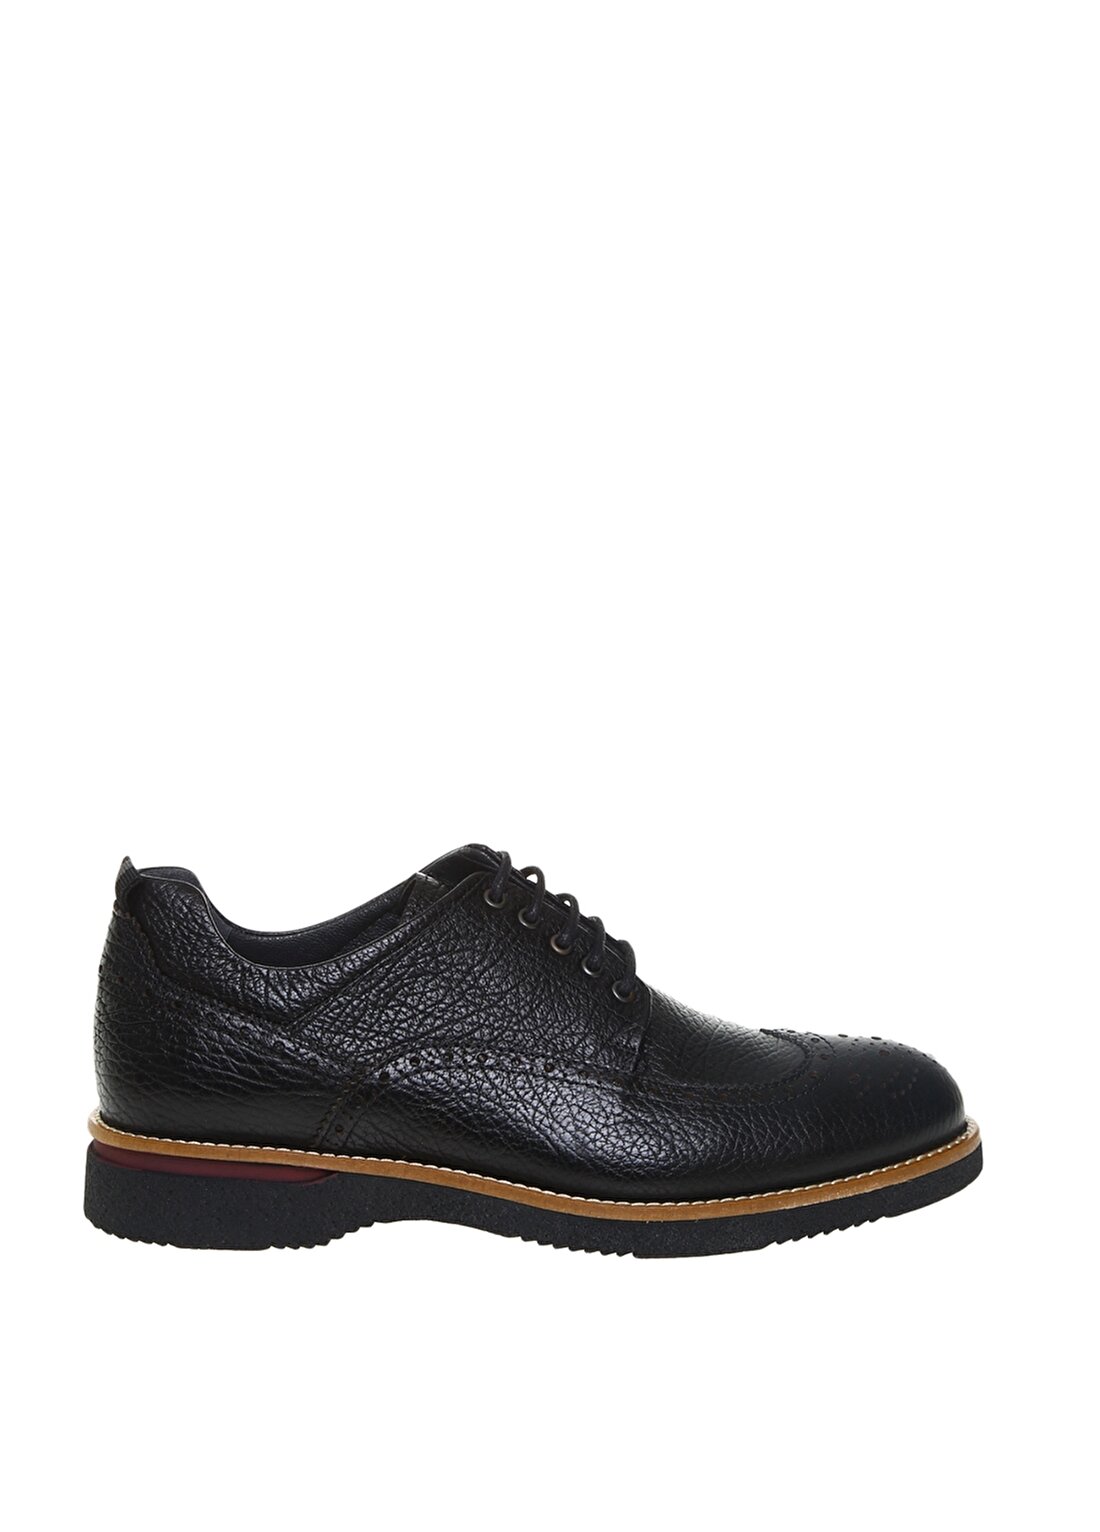 Greyder Erkek Oxford Siyah Klasik Ayakkabı